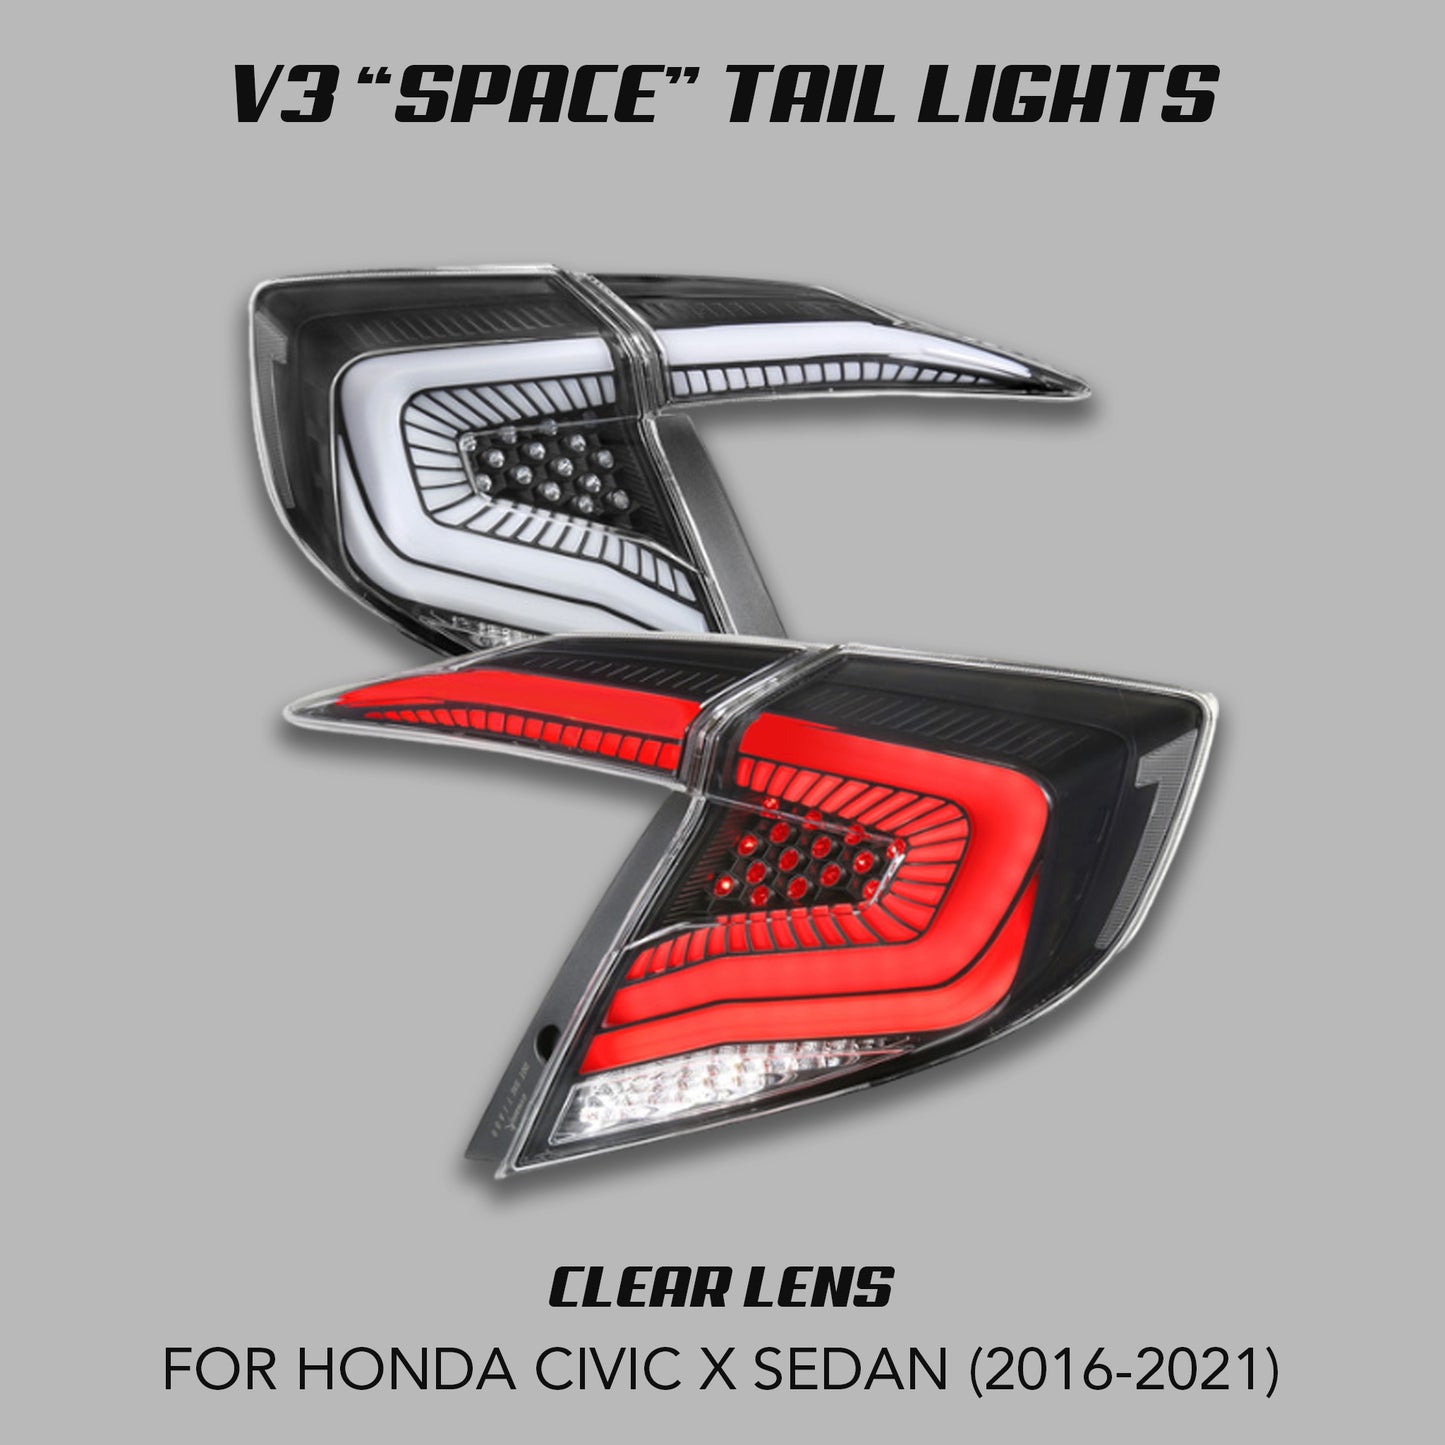 [CIVIC X SEDAN] V3 "SPACE" TAIL LIGHTS (SHIPS 5/30)